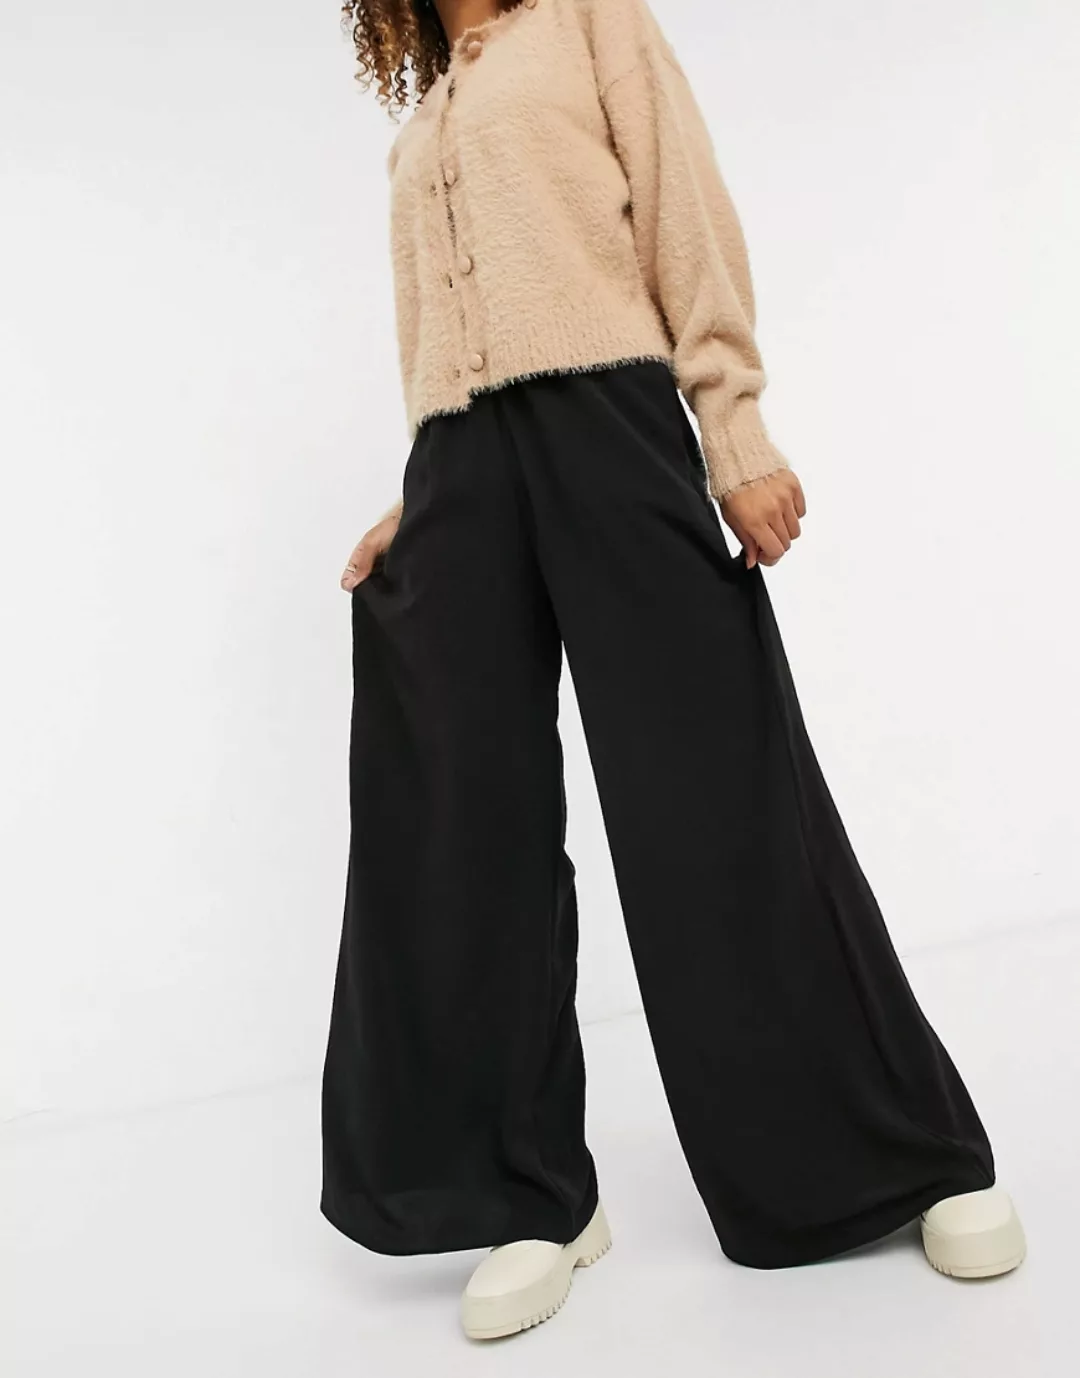 New Look – Hose in Schwarz mit weitem Bein günstig online kaufen